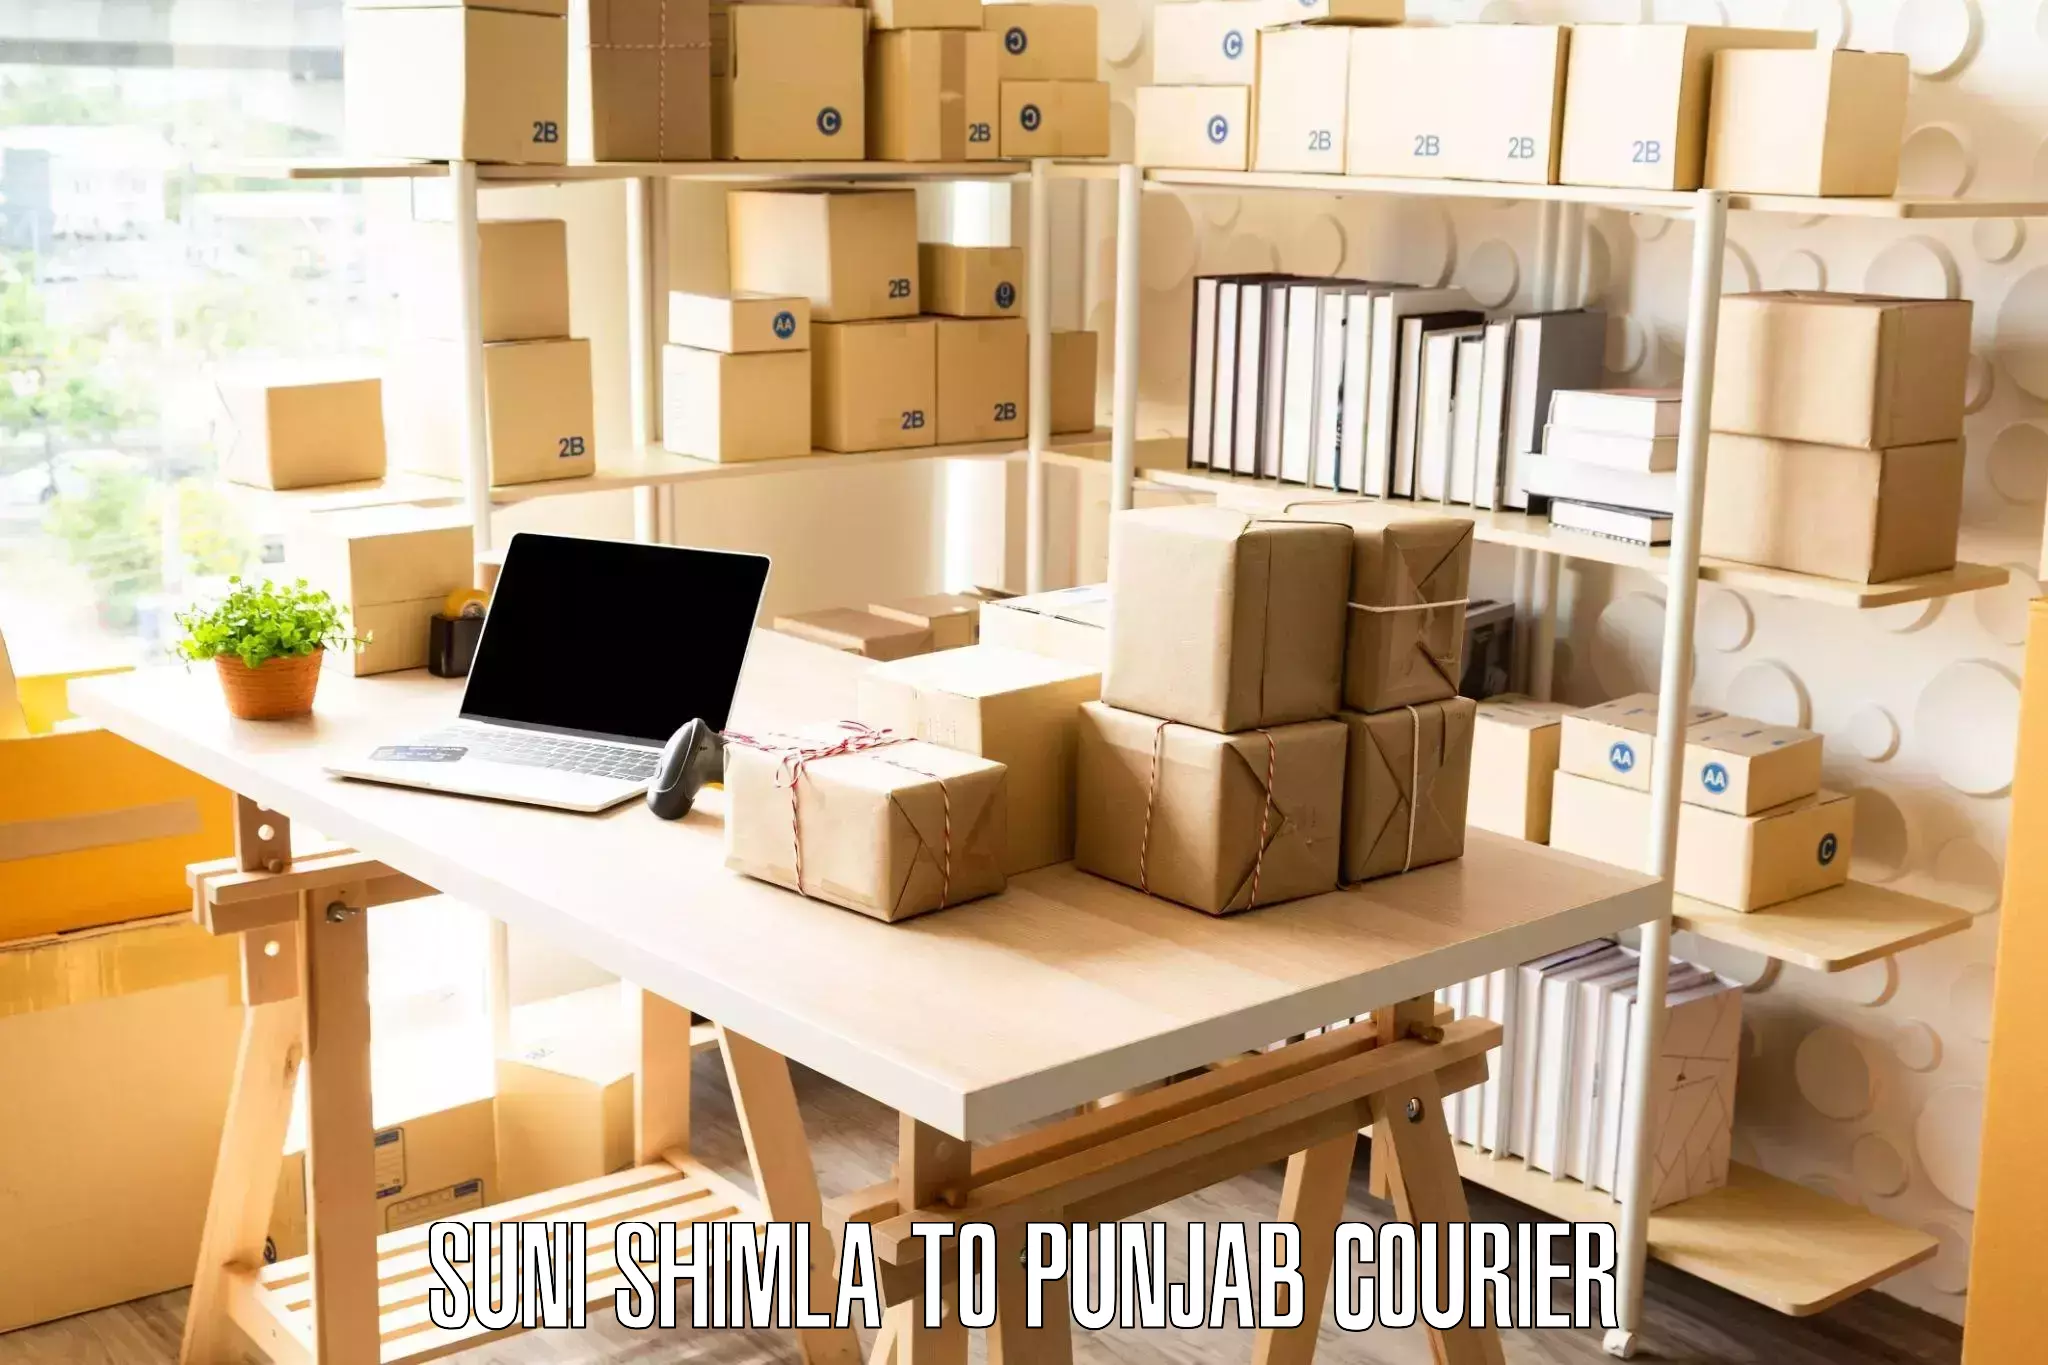 Professional furniture movers in Suni Shimla to Punjab